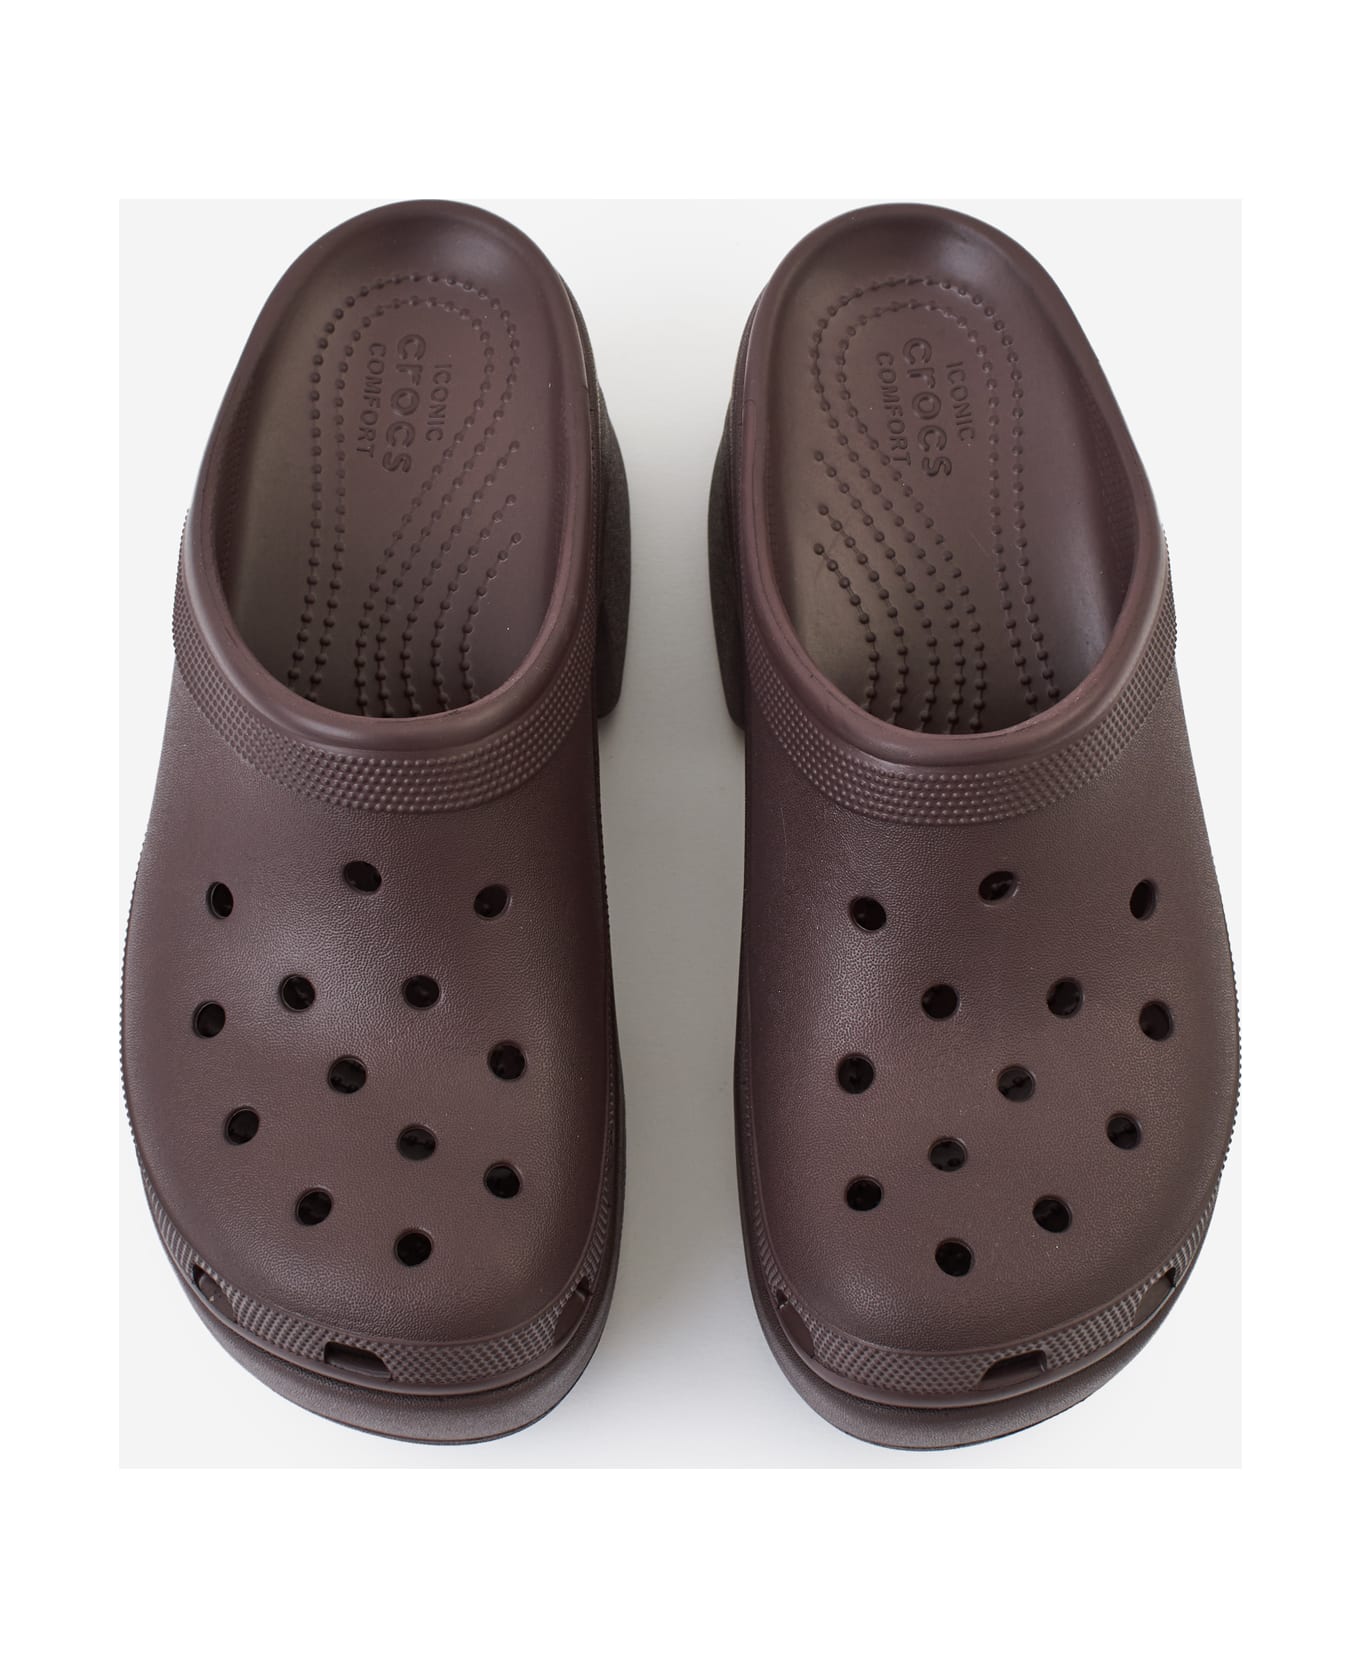 Crocs Siren Clog Sandals - bordeaux